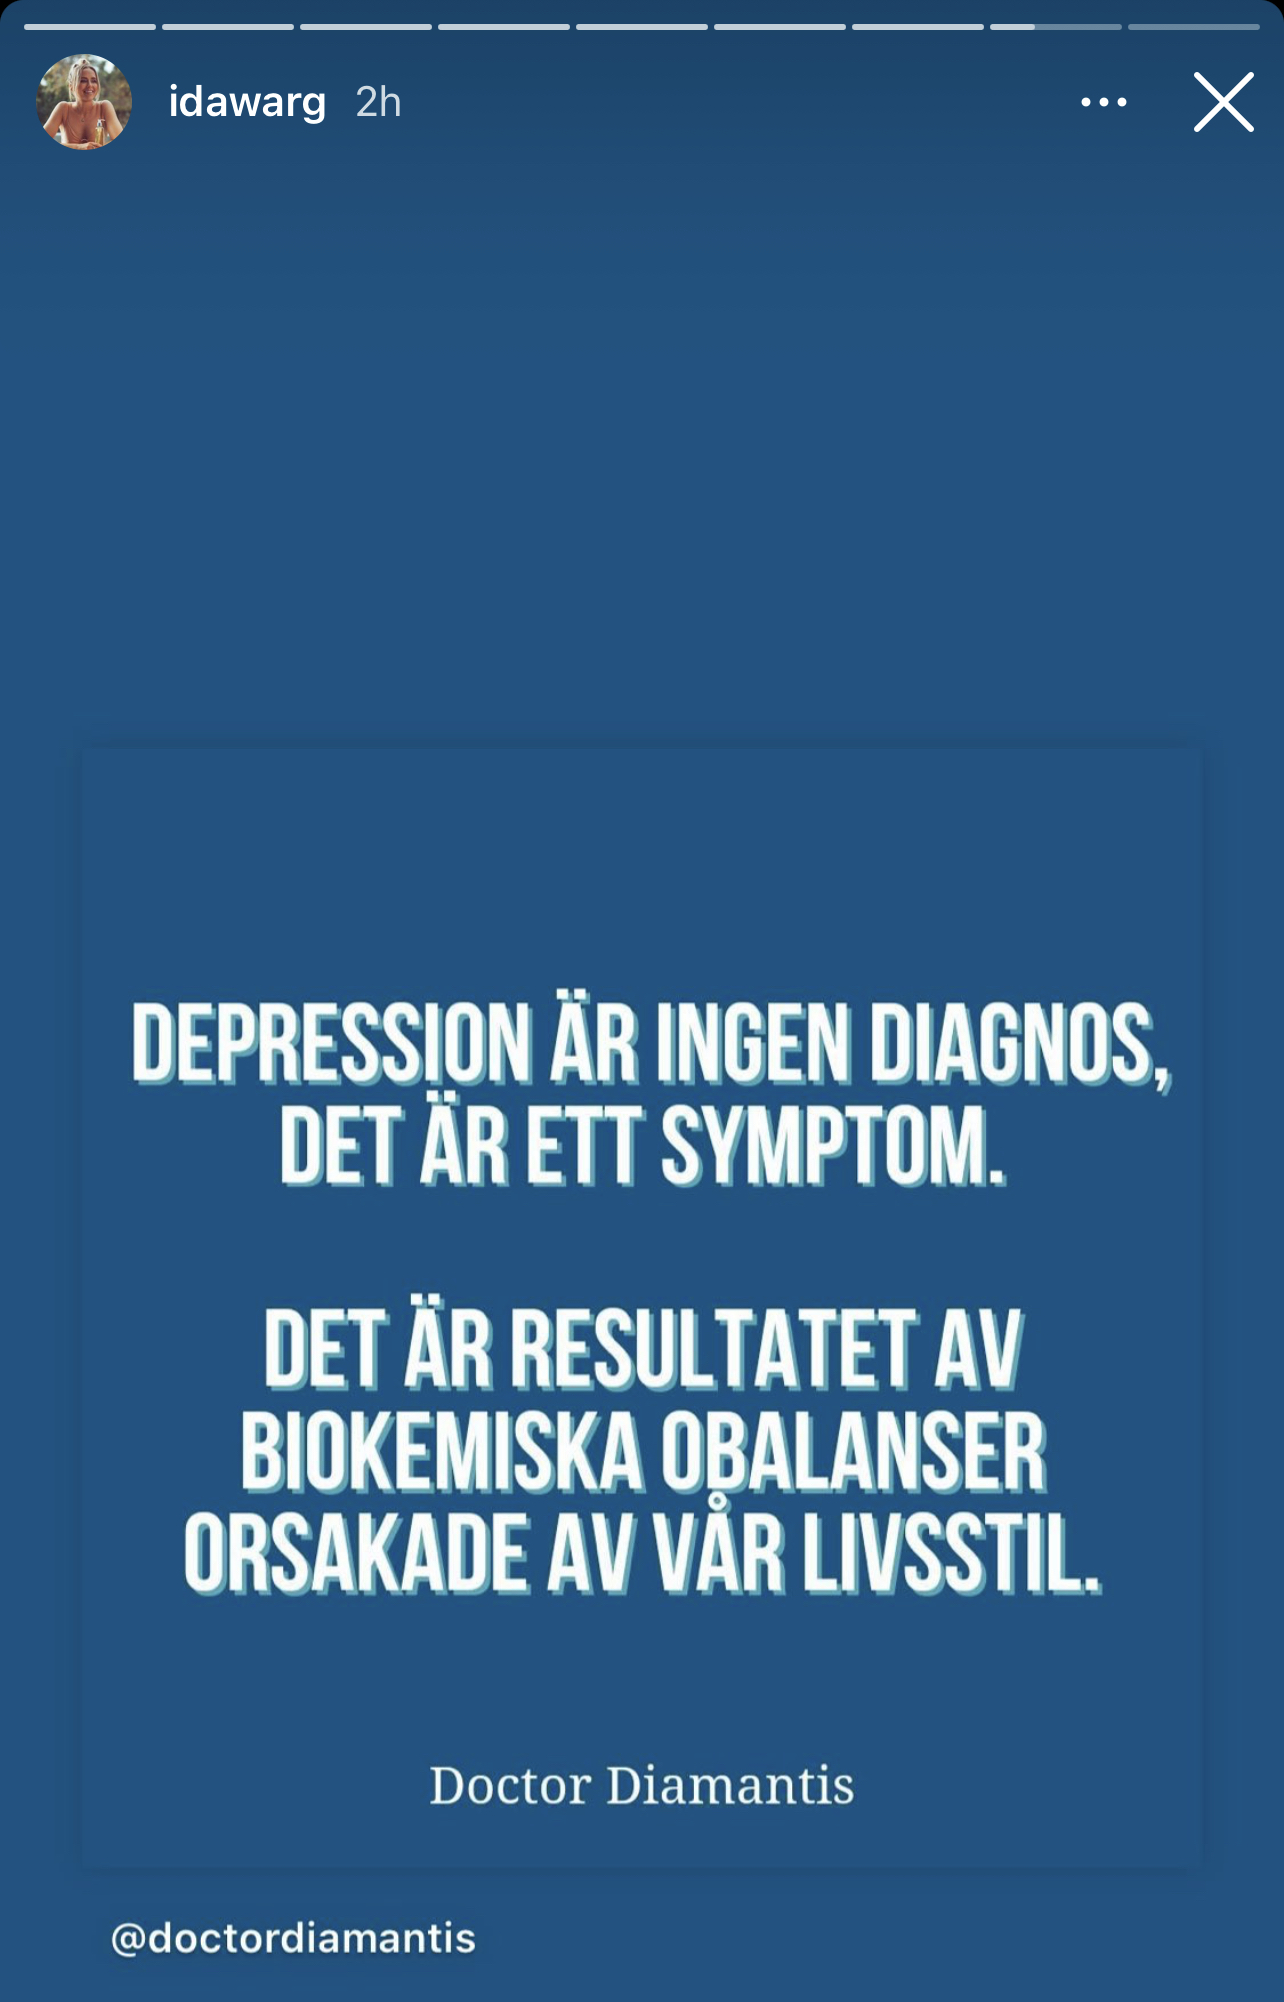 Depression är ingen diagnos. Det är ett symptom. Det är resultatet av biokemiska obalanser orsakade av vår livsstil. //Dr Diamantis